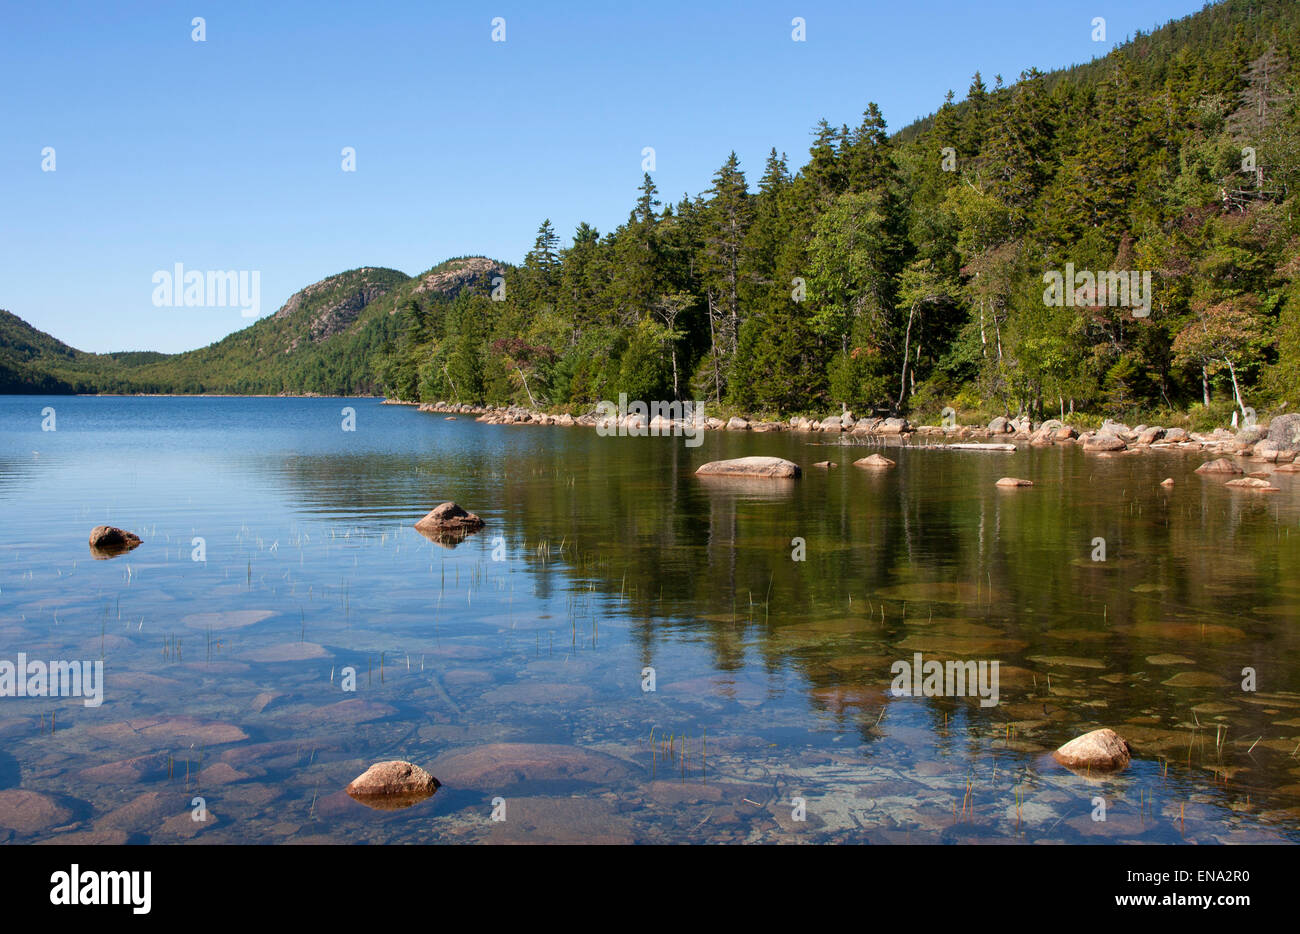 L'Acadia National Park, moi - septembre 8, 2014 : une ligne d'arbres se reflète dans les eaux claires de la Jordanie, de l'étang avec les bulles Banque D'Images